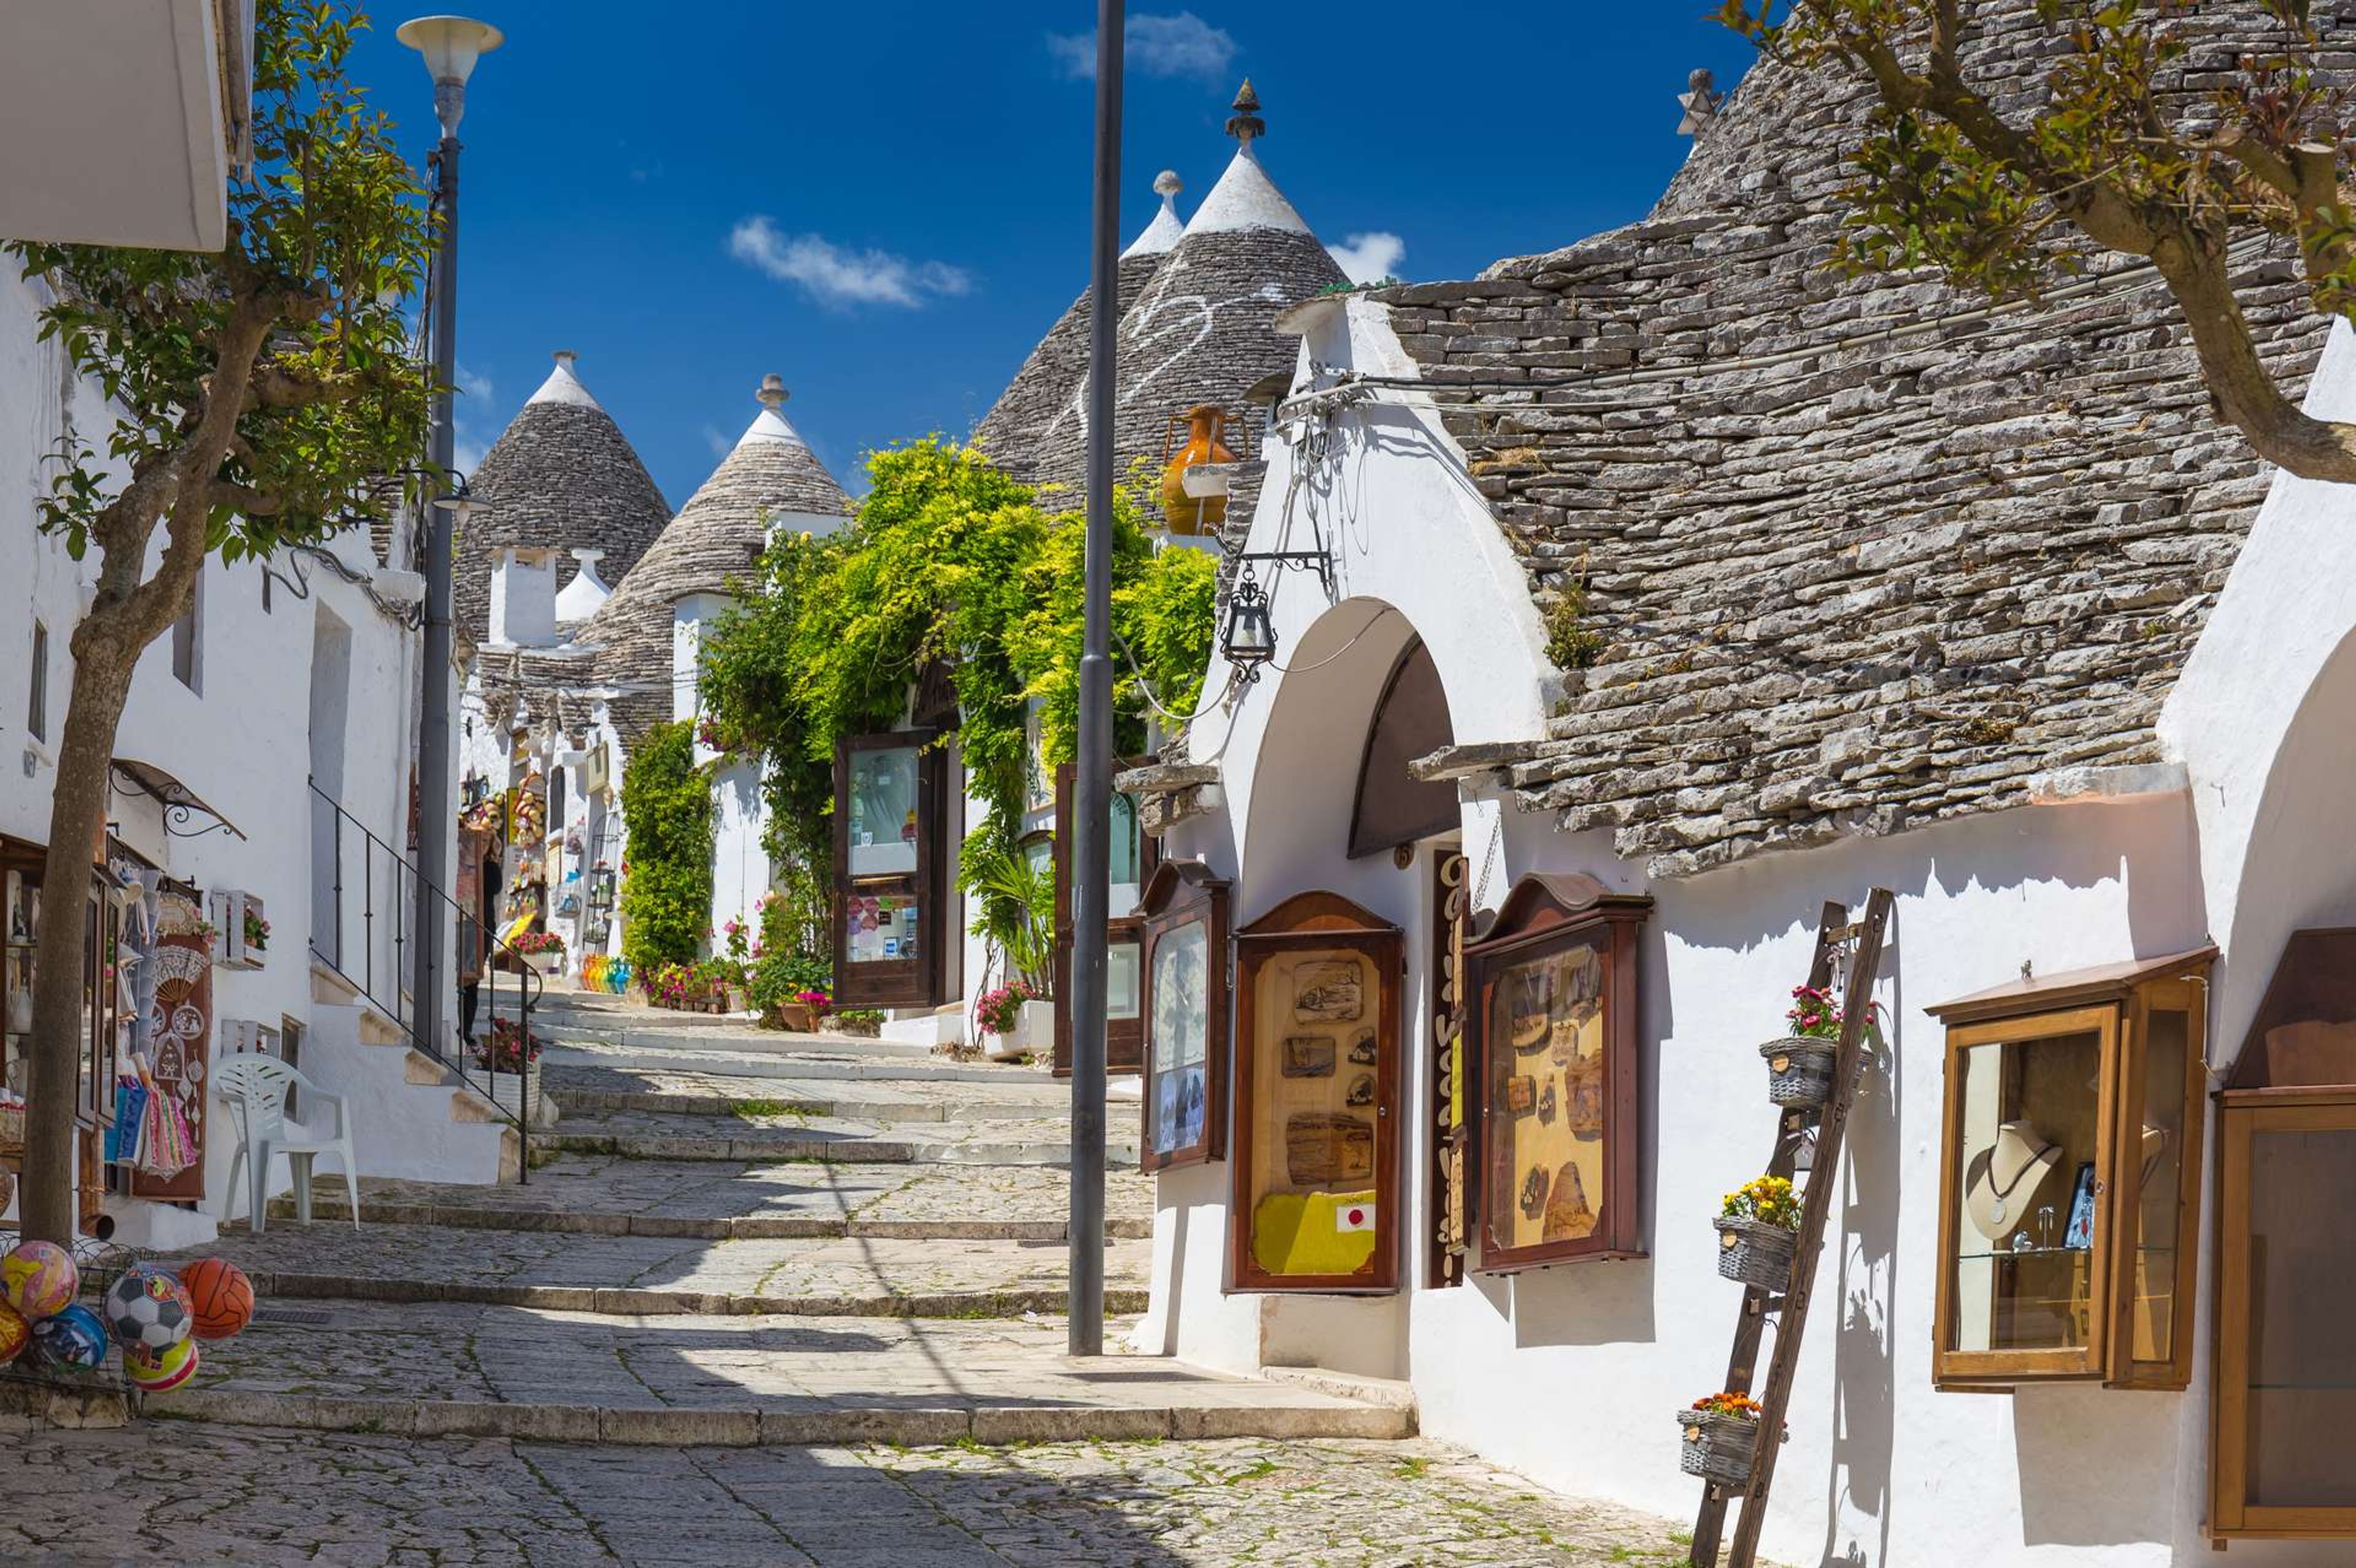 Italië Alberobello trulli houses in Monte Pertica Street1